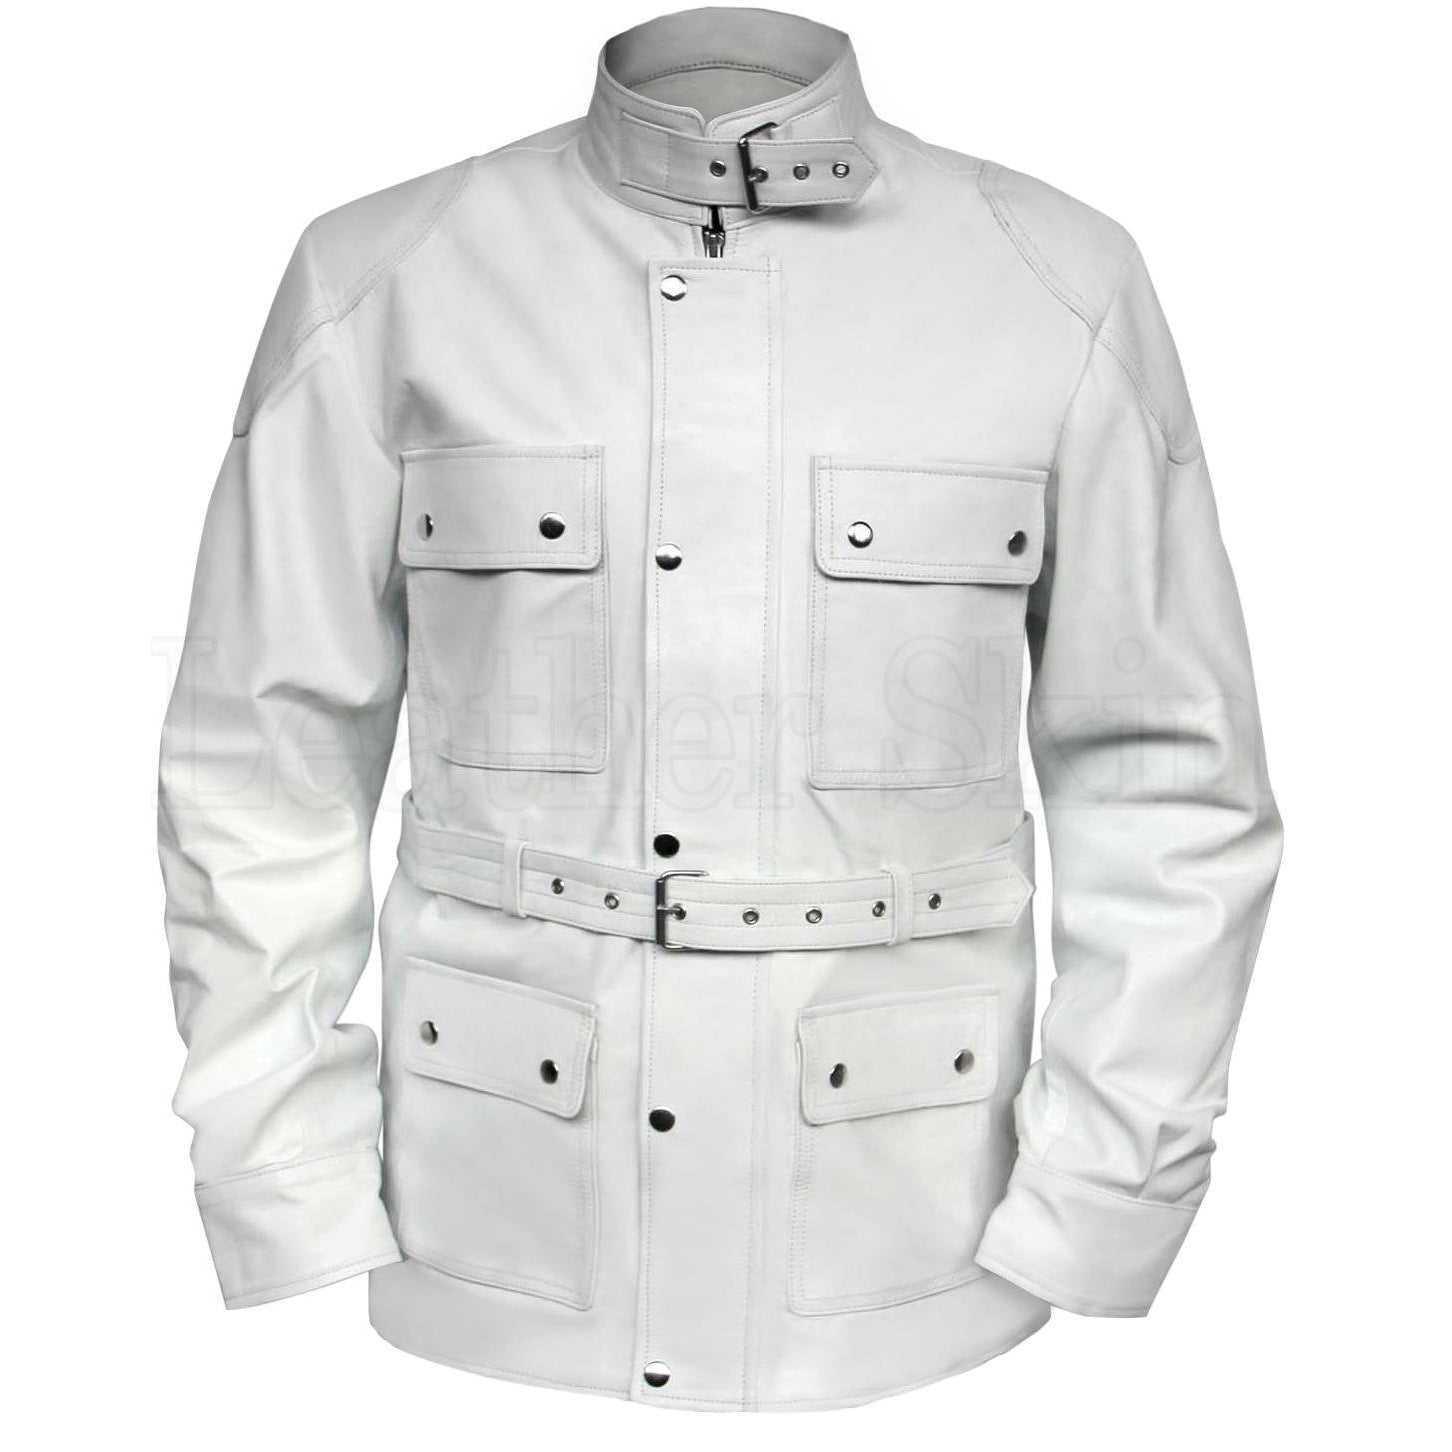 White Leather Jackets - Buy White Leather Jackets online at Best